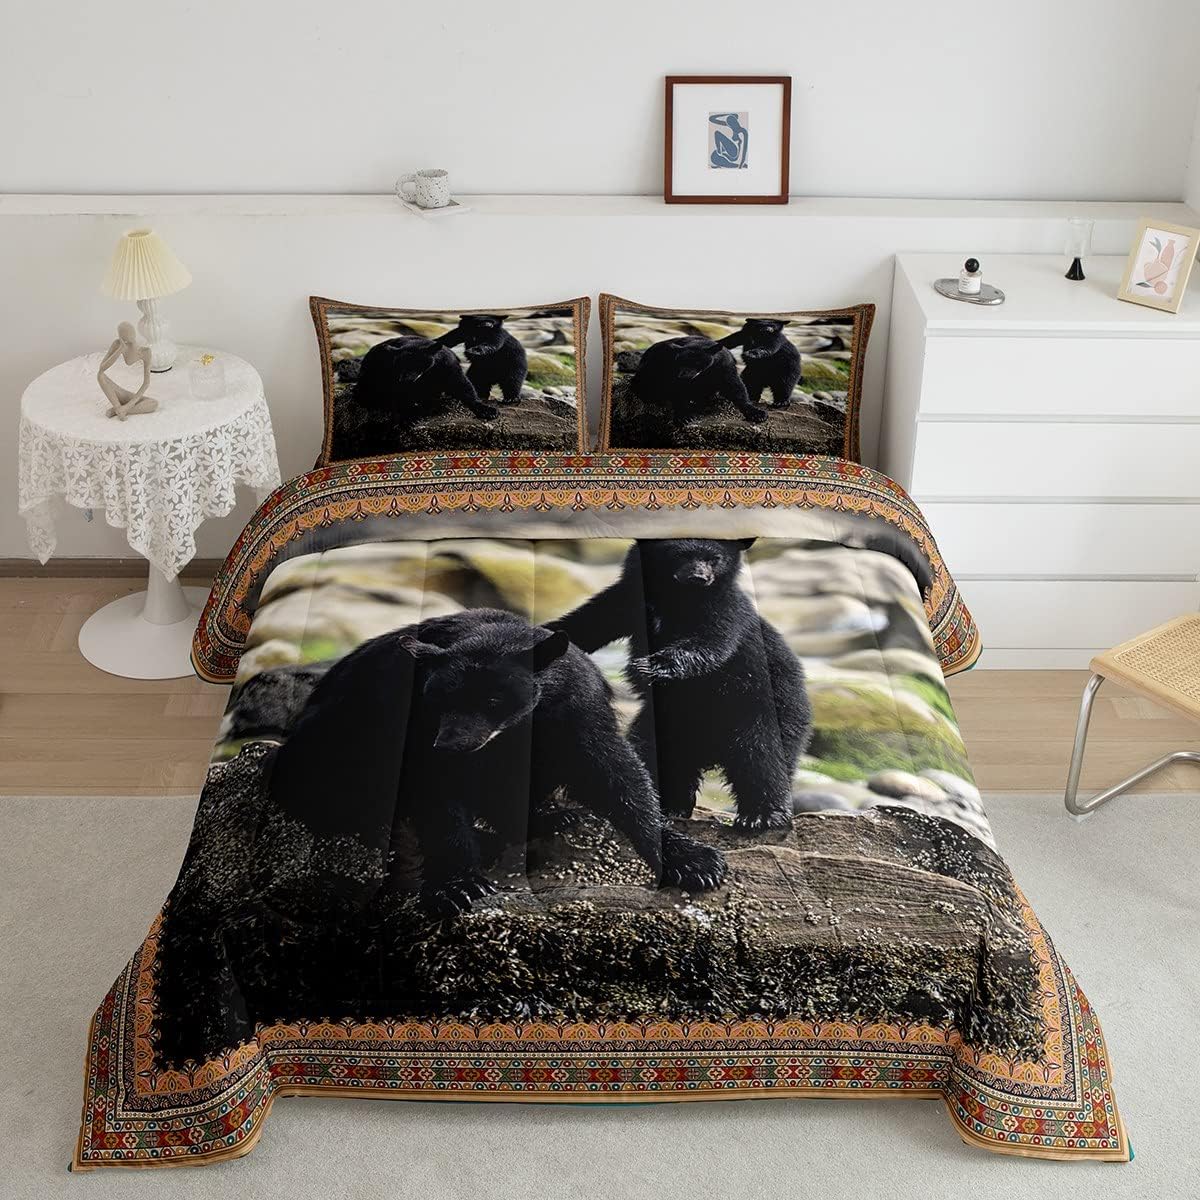 Juego de edredón de oso negro, juego de ropa de cama retro de caza de animales